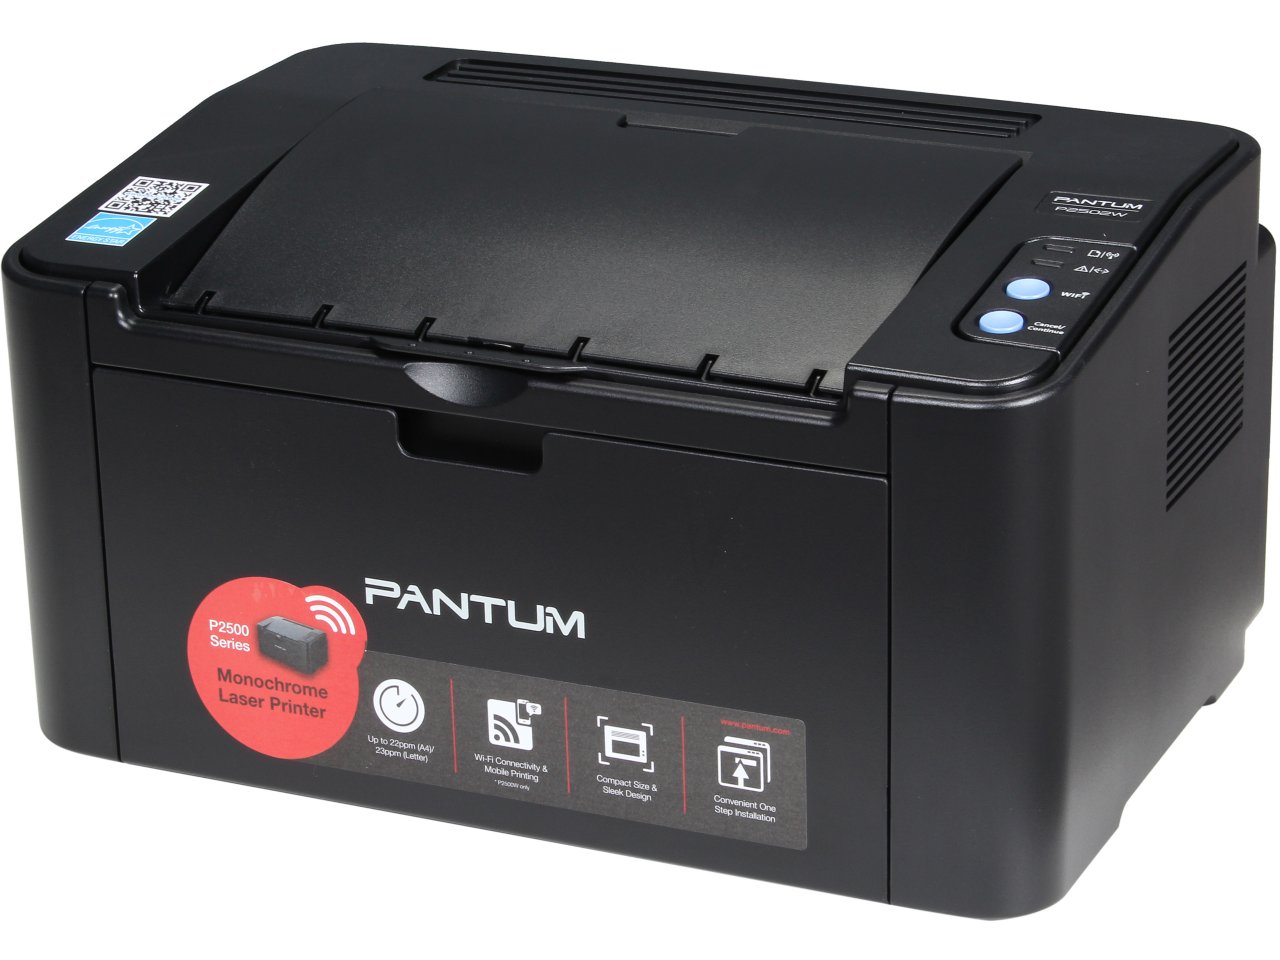 Pantum P2502W Wireless Monochrome Laser Printer $25 shipped (Reg. $46)